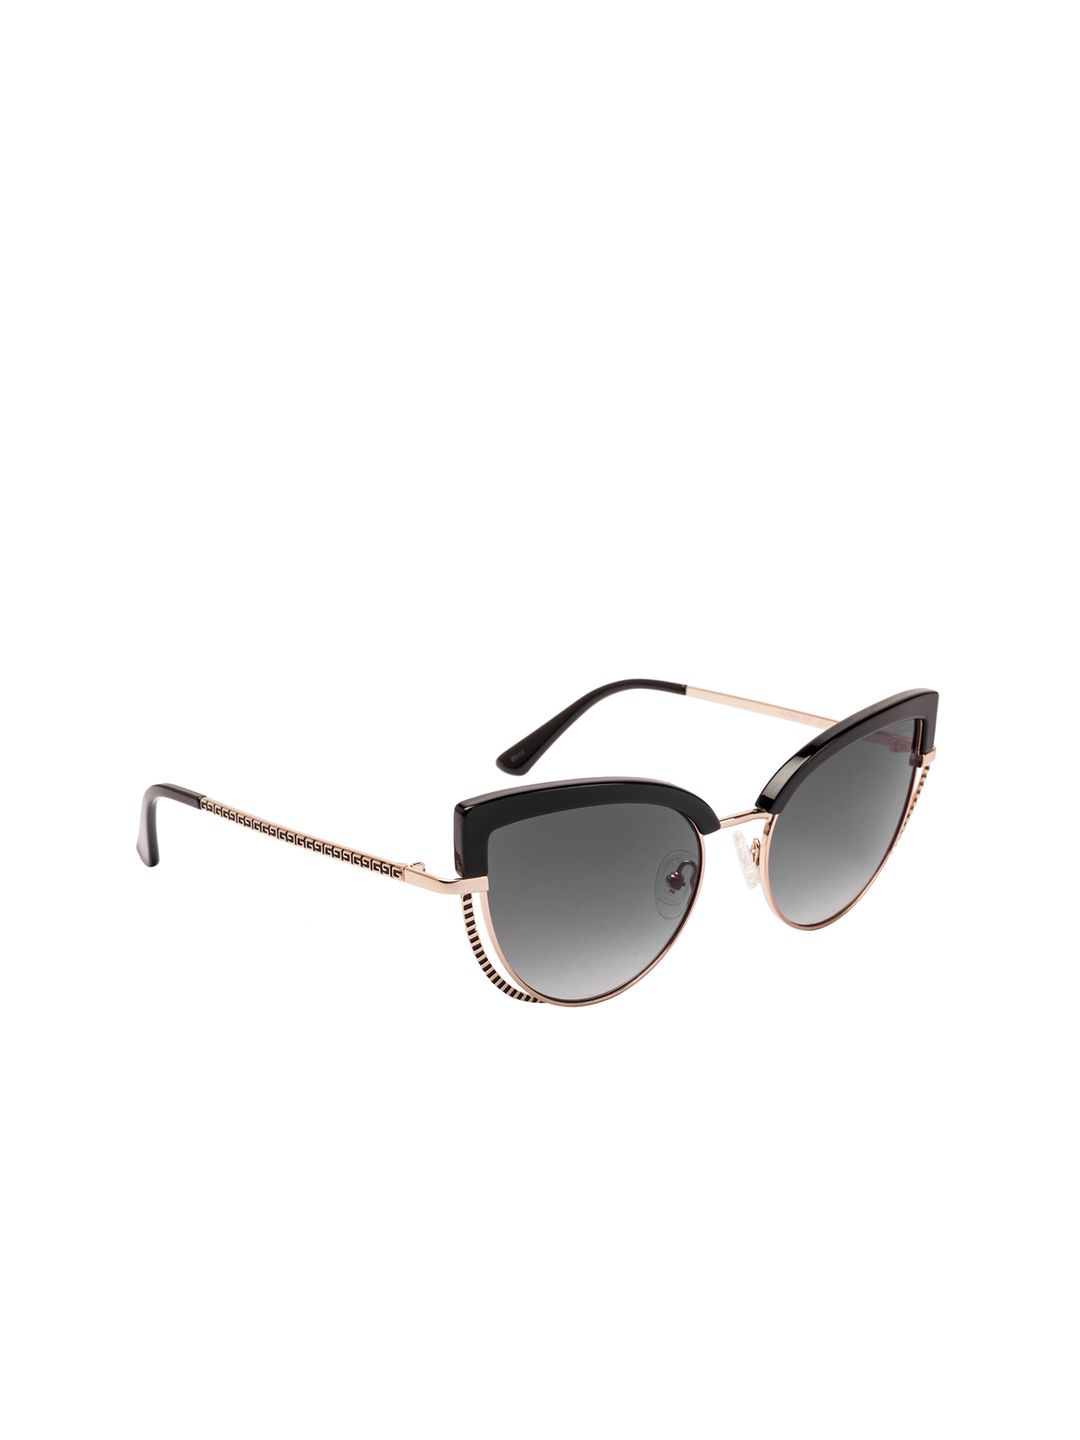 GUESS Women Cateye Sunglasses GU7622 54 01B Price in India